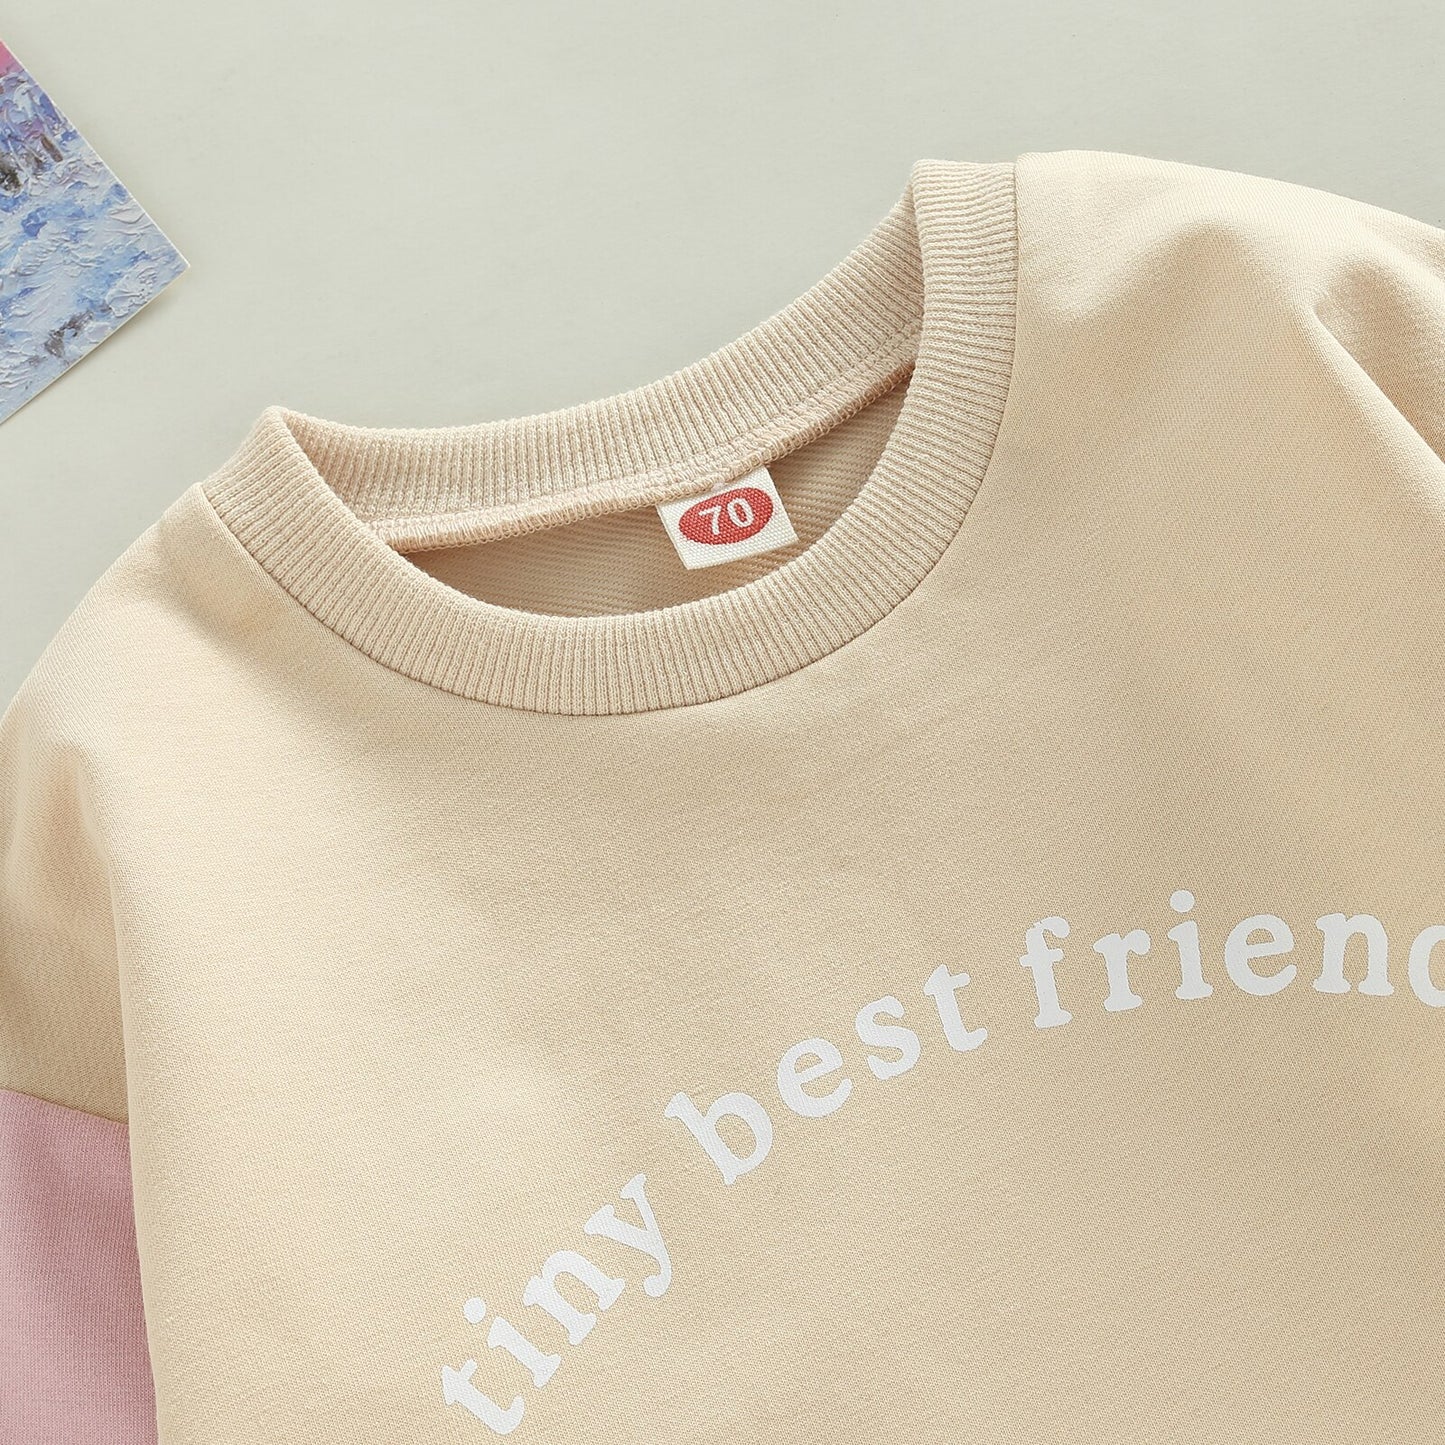 Tiny Best Friend Sweatshirt Onesie